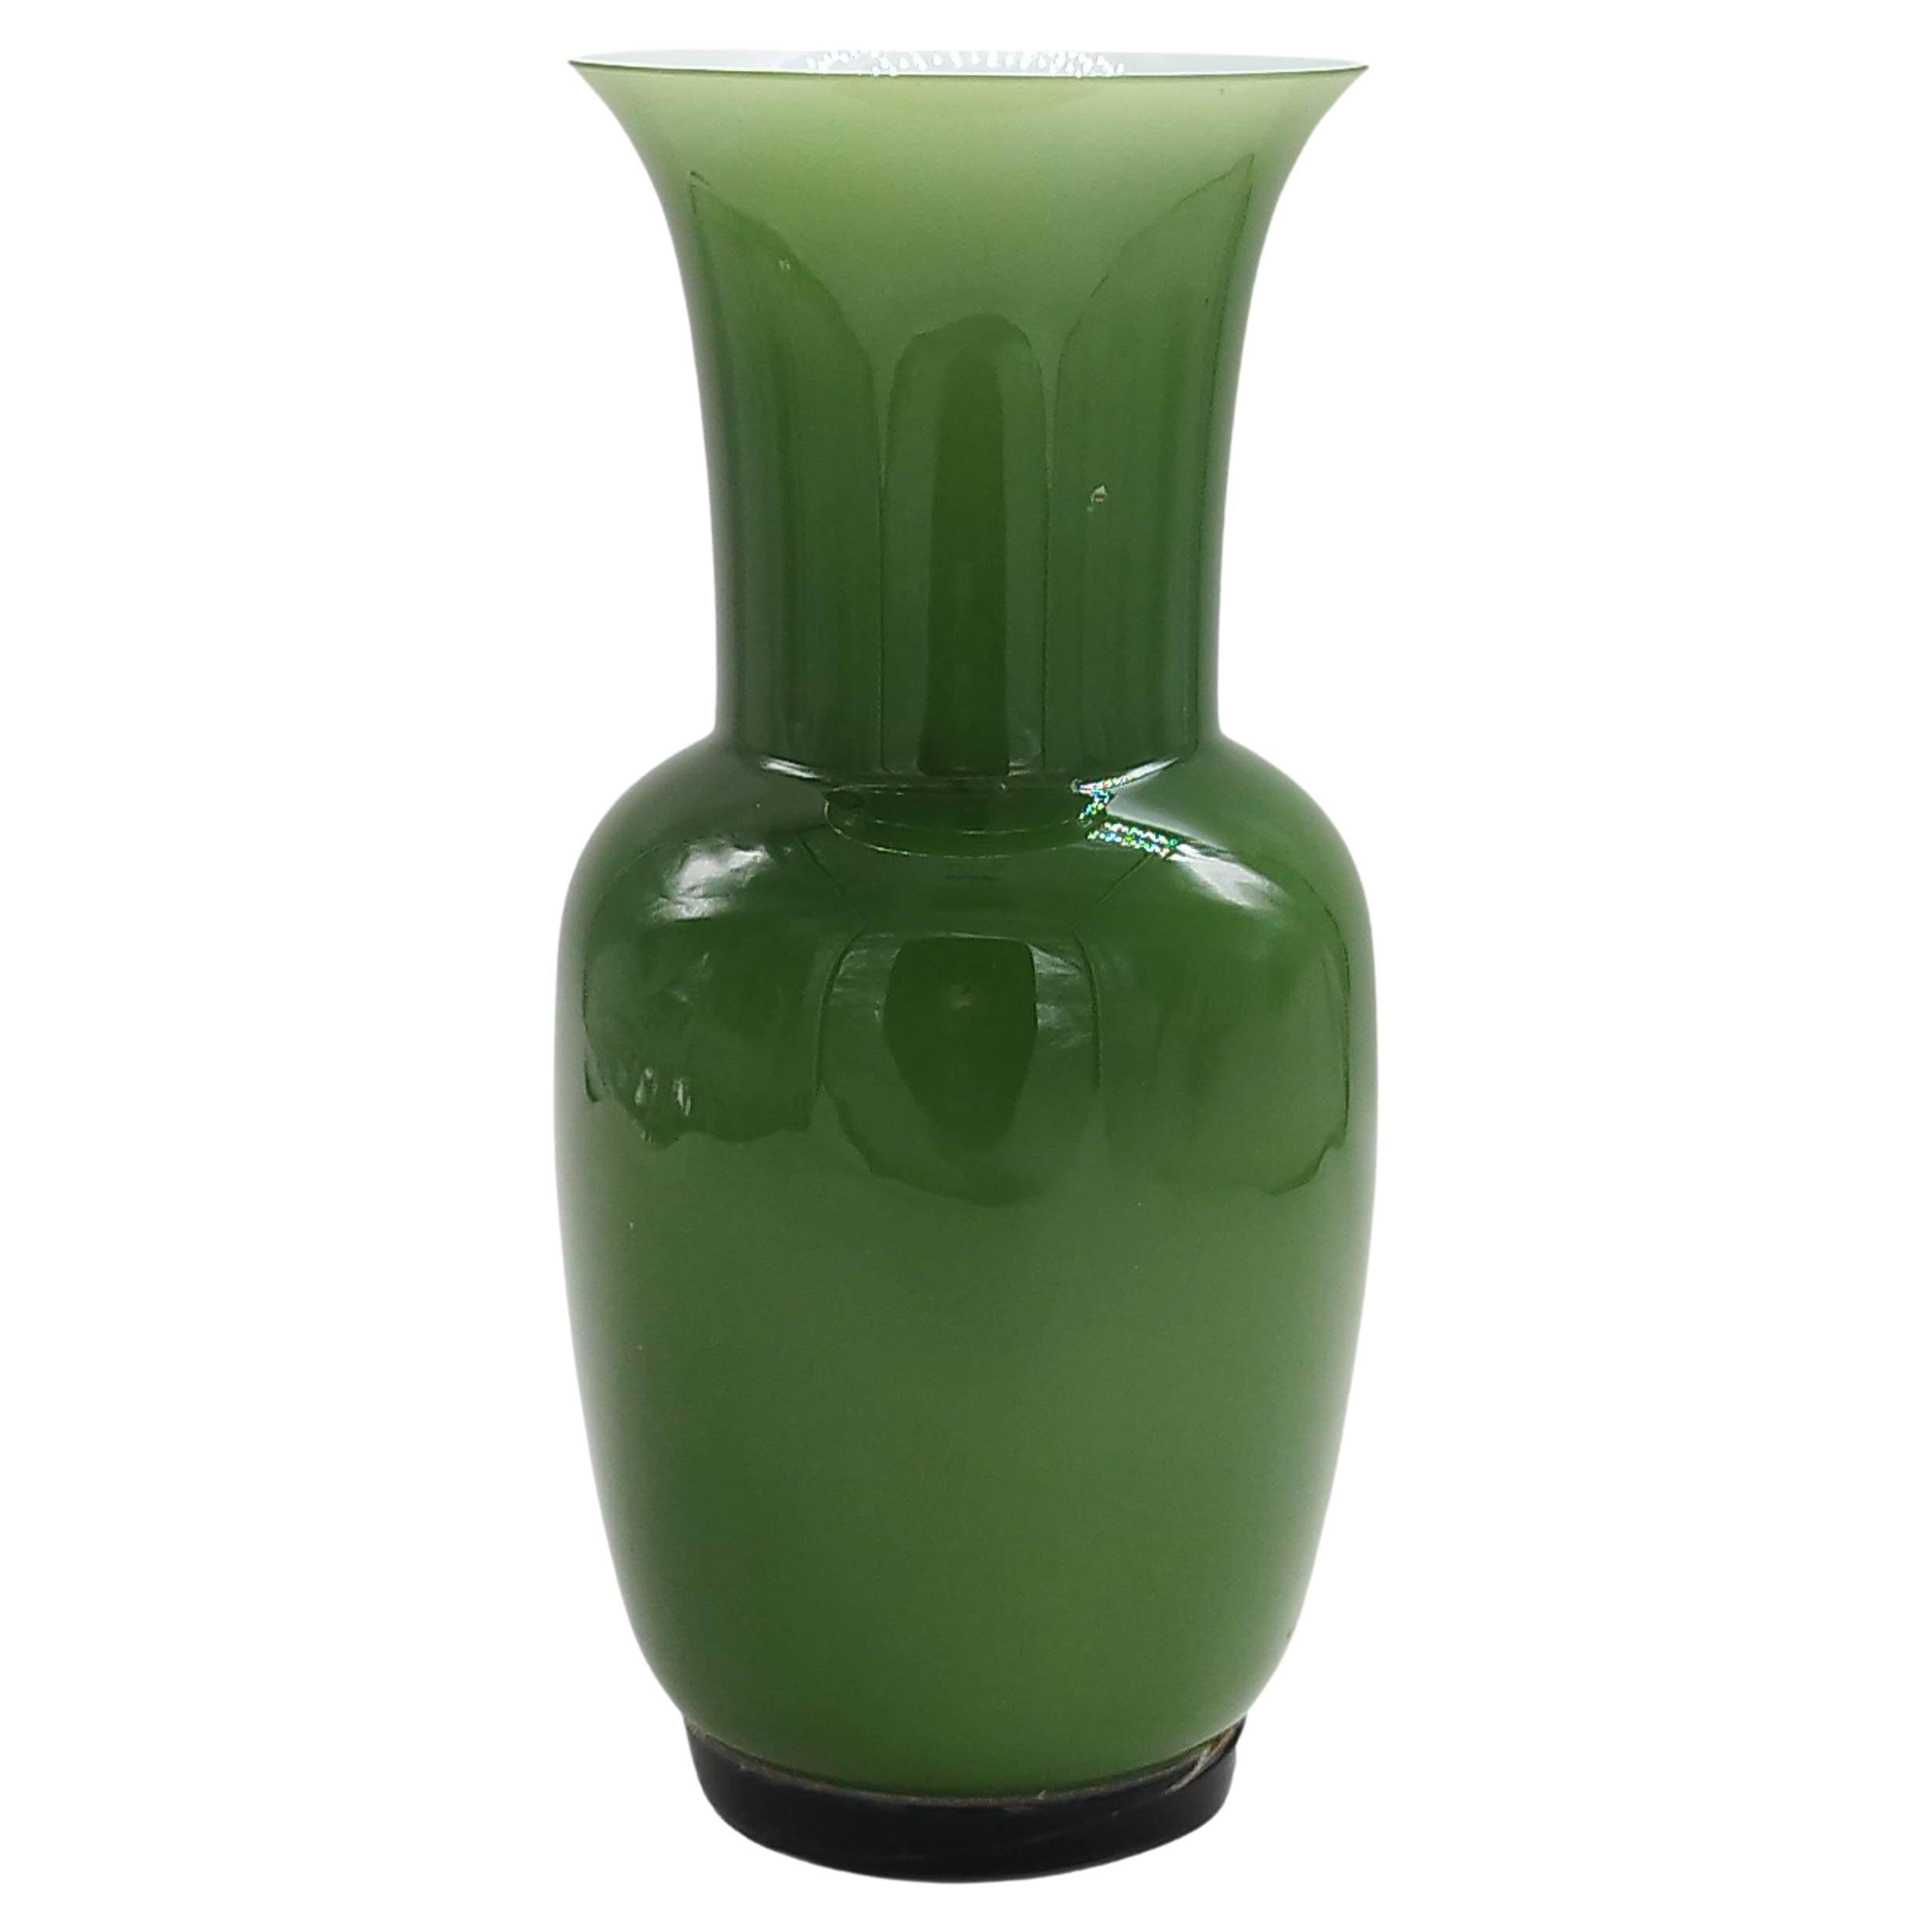 Tommaso Buzzi for Venini "Incamiciato" Murano Glass Vase, Italy, 1989 For Sale